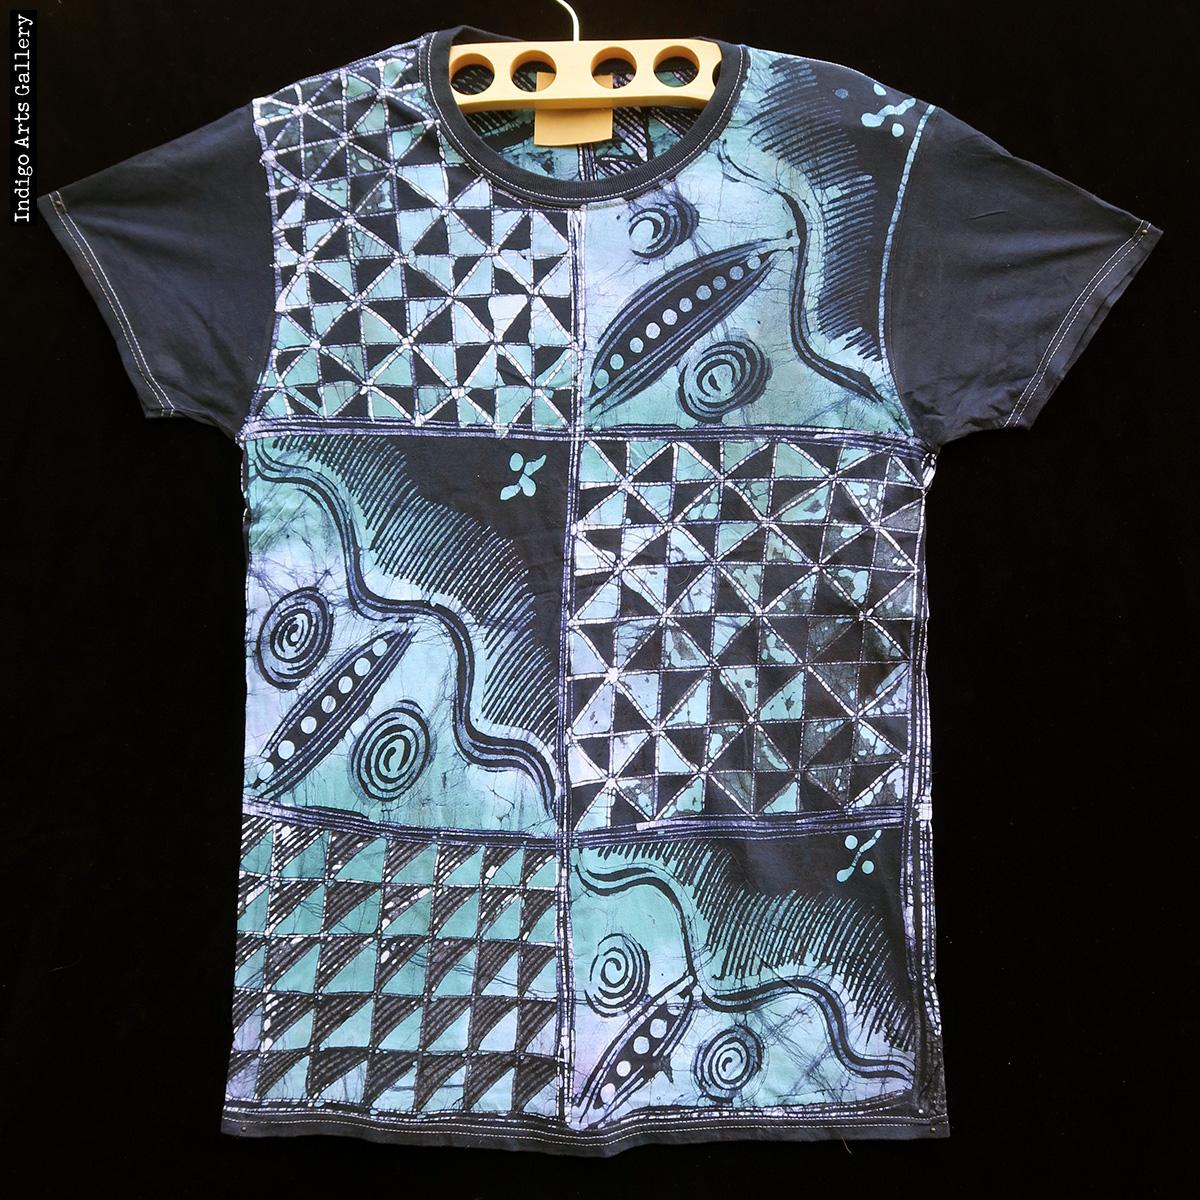  Batik  T shirt  by Gasali Adeyemo Medium Indigo Arts